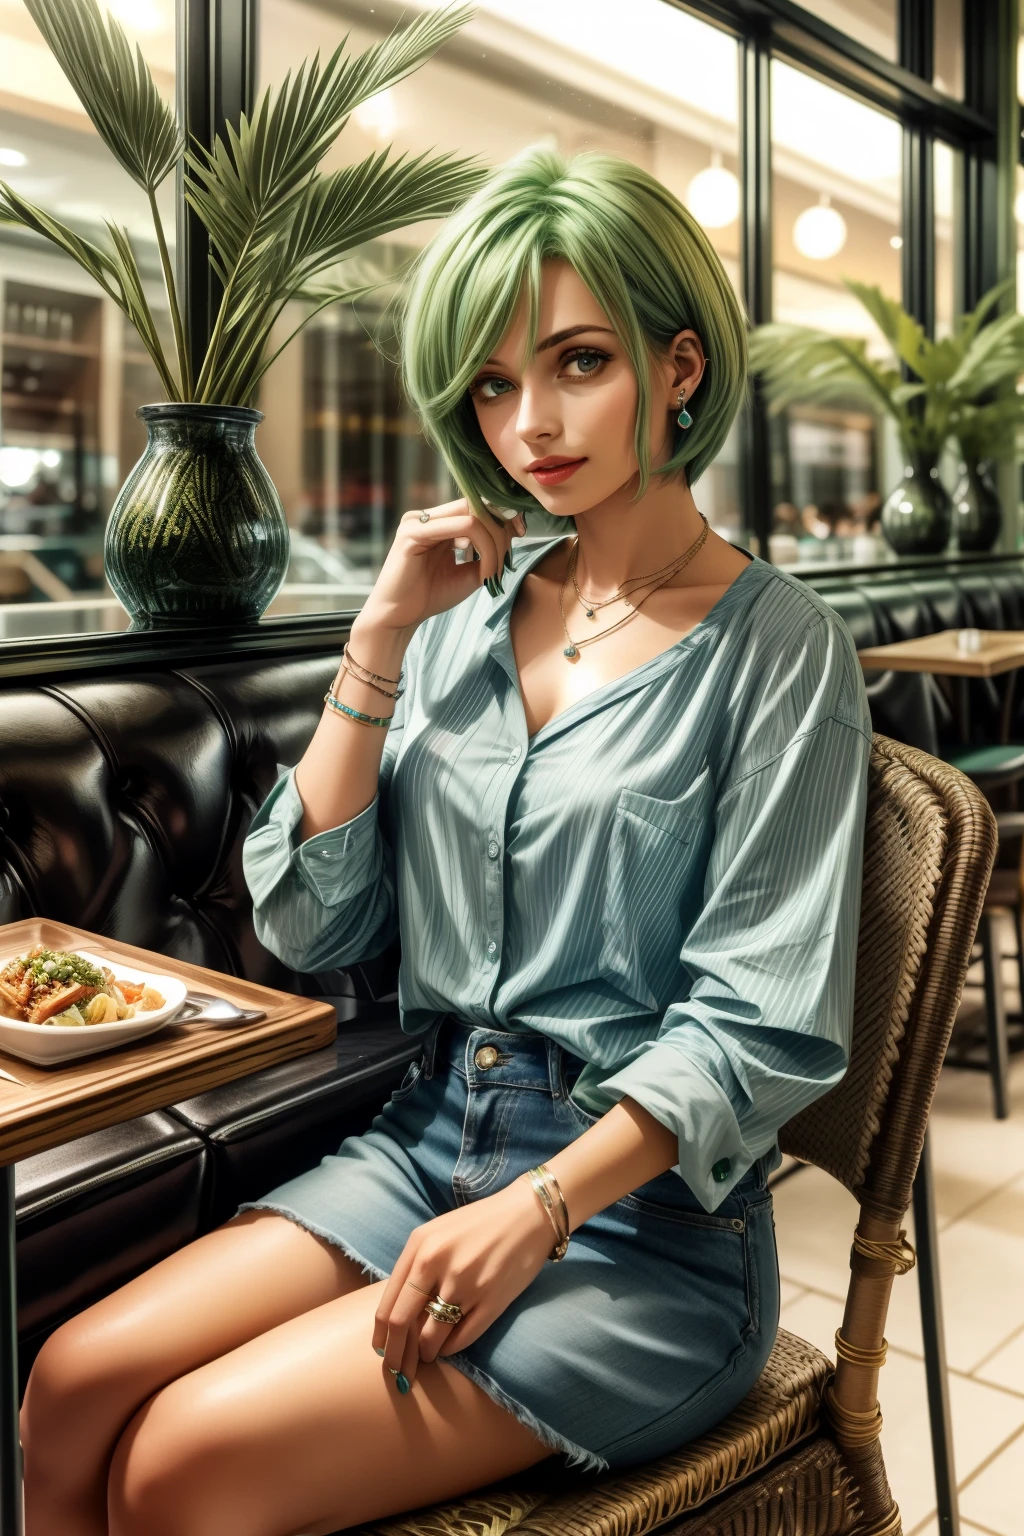 フレデリカ・グリーンヒル, 25歳, ショートカット, 緑の髪, wea指輪 a light Blue casual shirts fashion at a casual restaurant, 椅子に座っている , ear指輪s, ネックレス, 指輪, ブレスレット, 